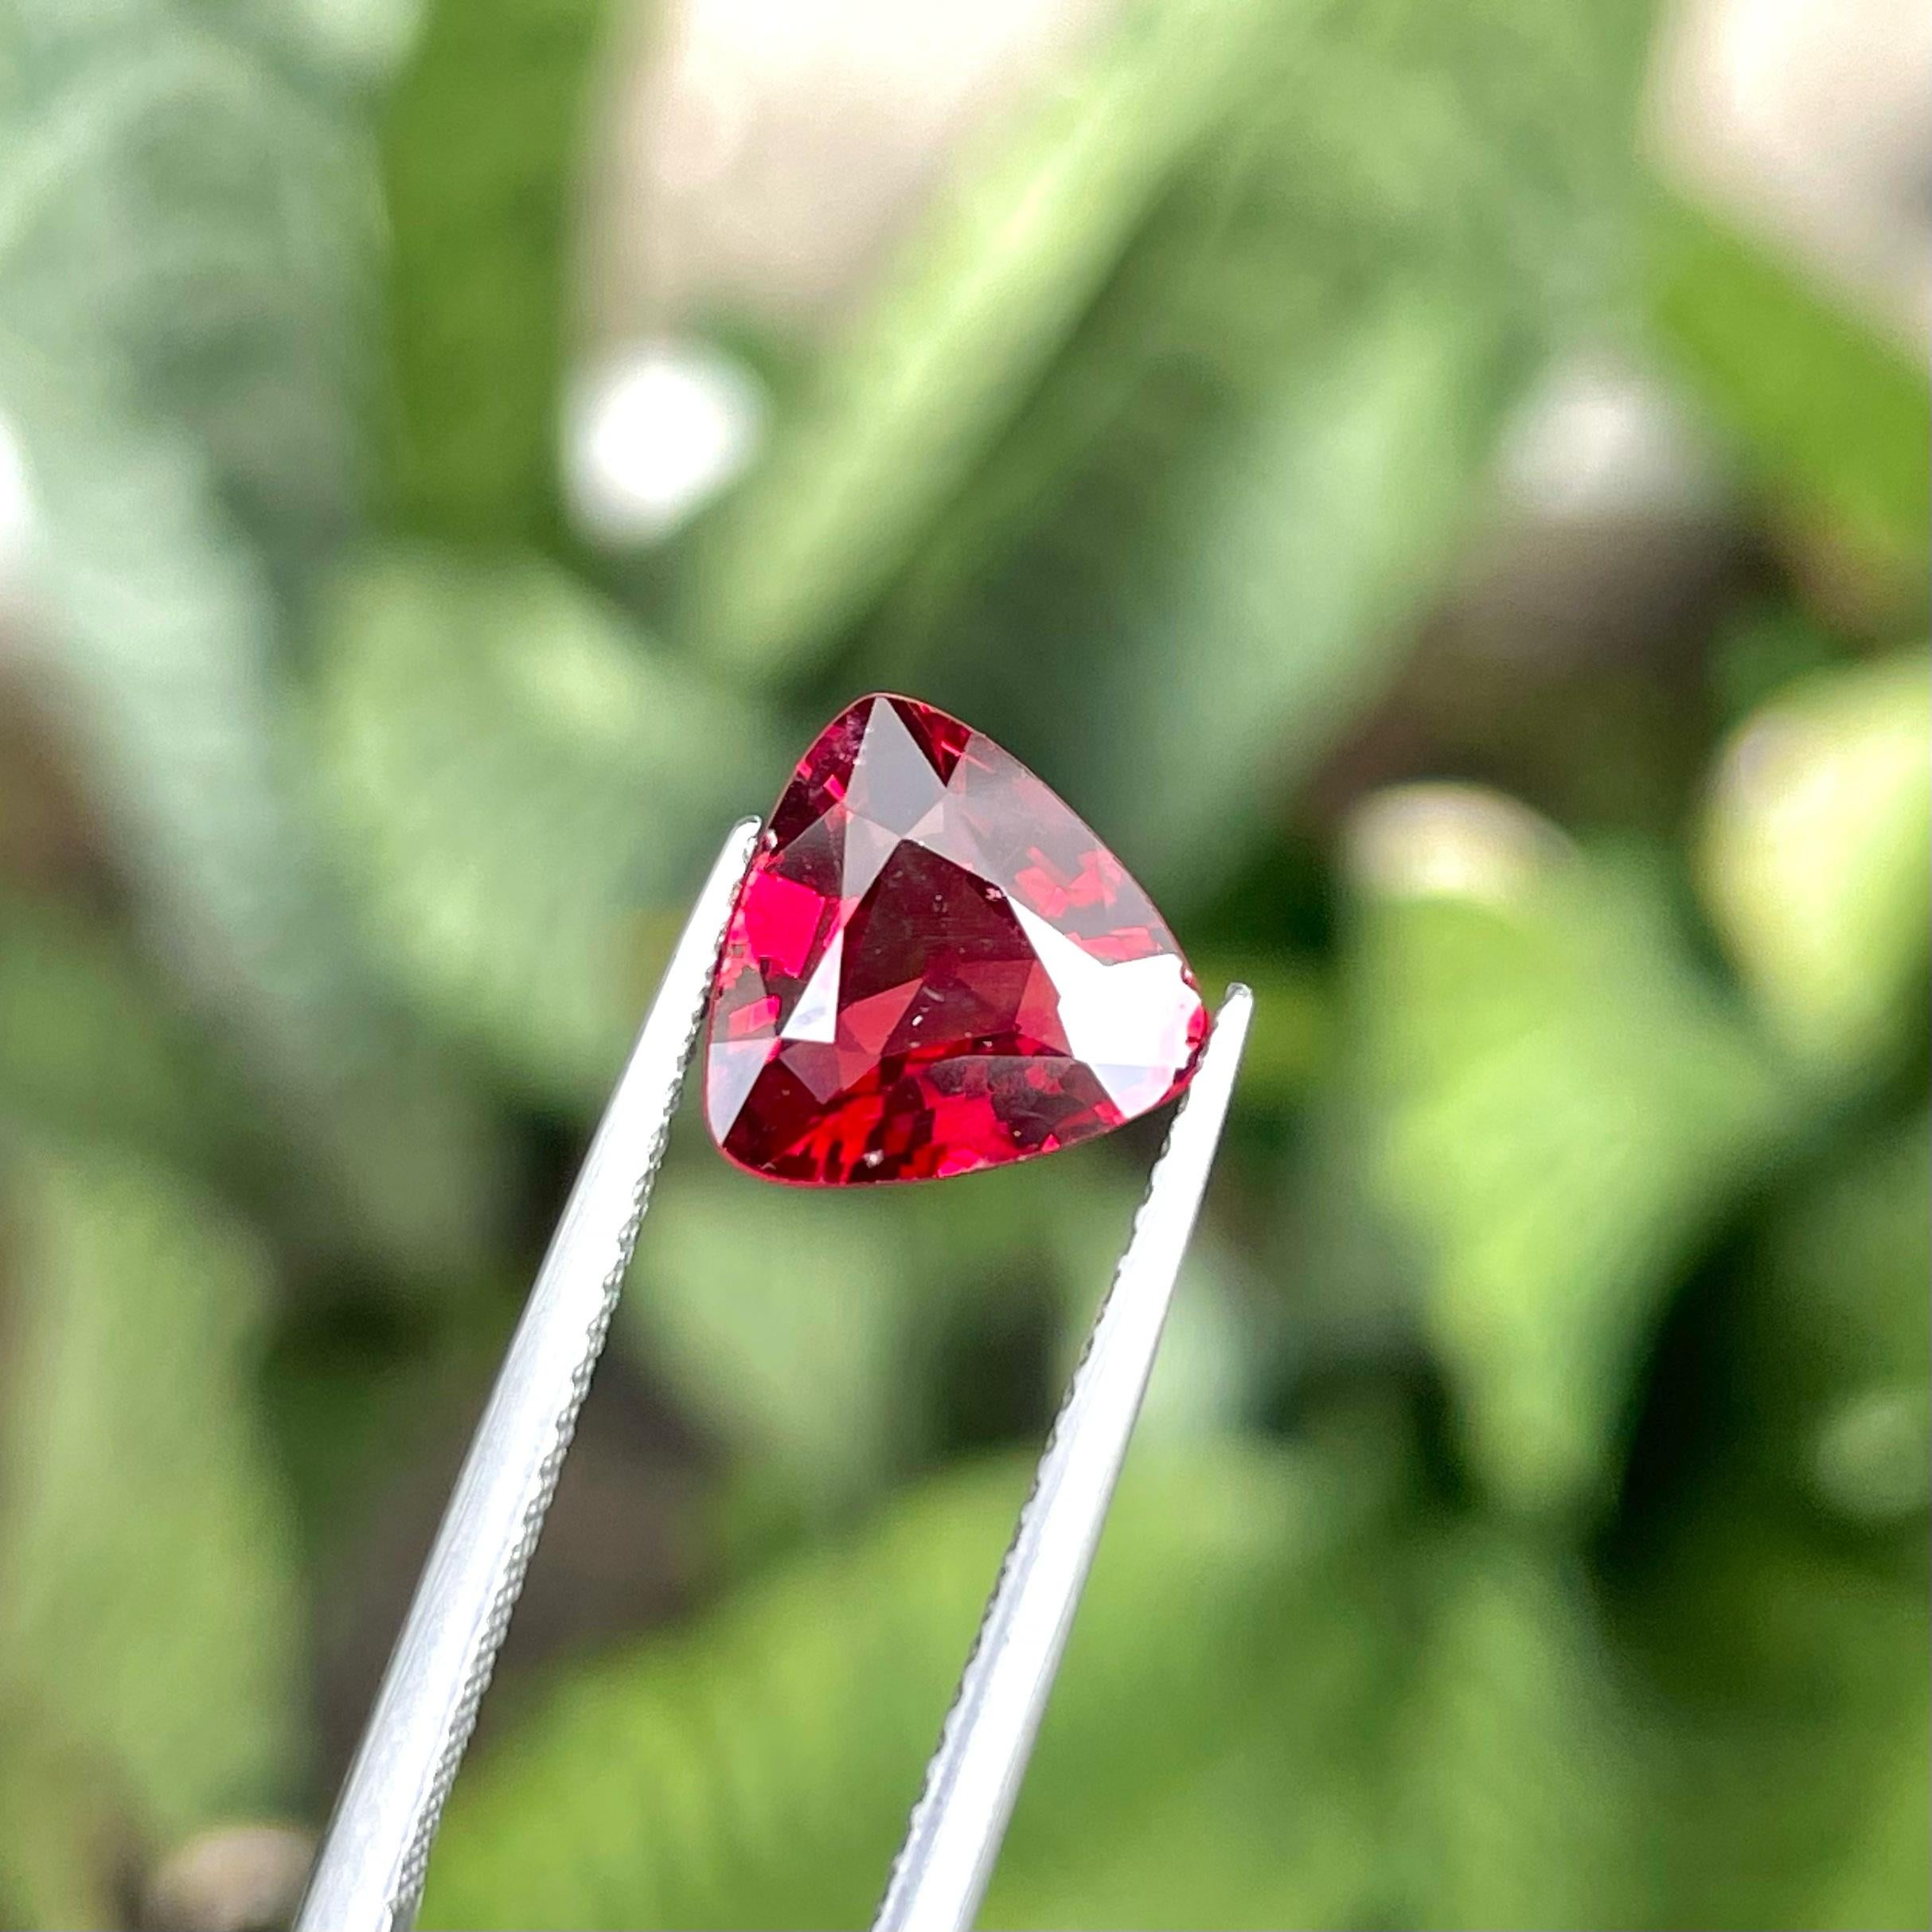 Eblouissante Spinelle naturelle rouge doux de 2.10 carats de Birmanie a une coupe merveilleuse dans une forme triangulaire, couleur rouge incroyable. Une grande brillance. Cette pierre précieuse est de pureté VVS.

Informations sur le produit :
TYPE